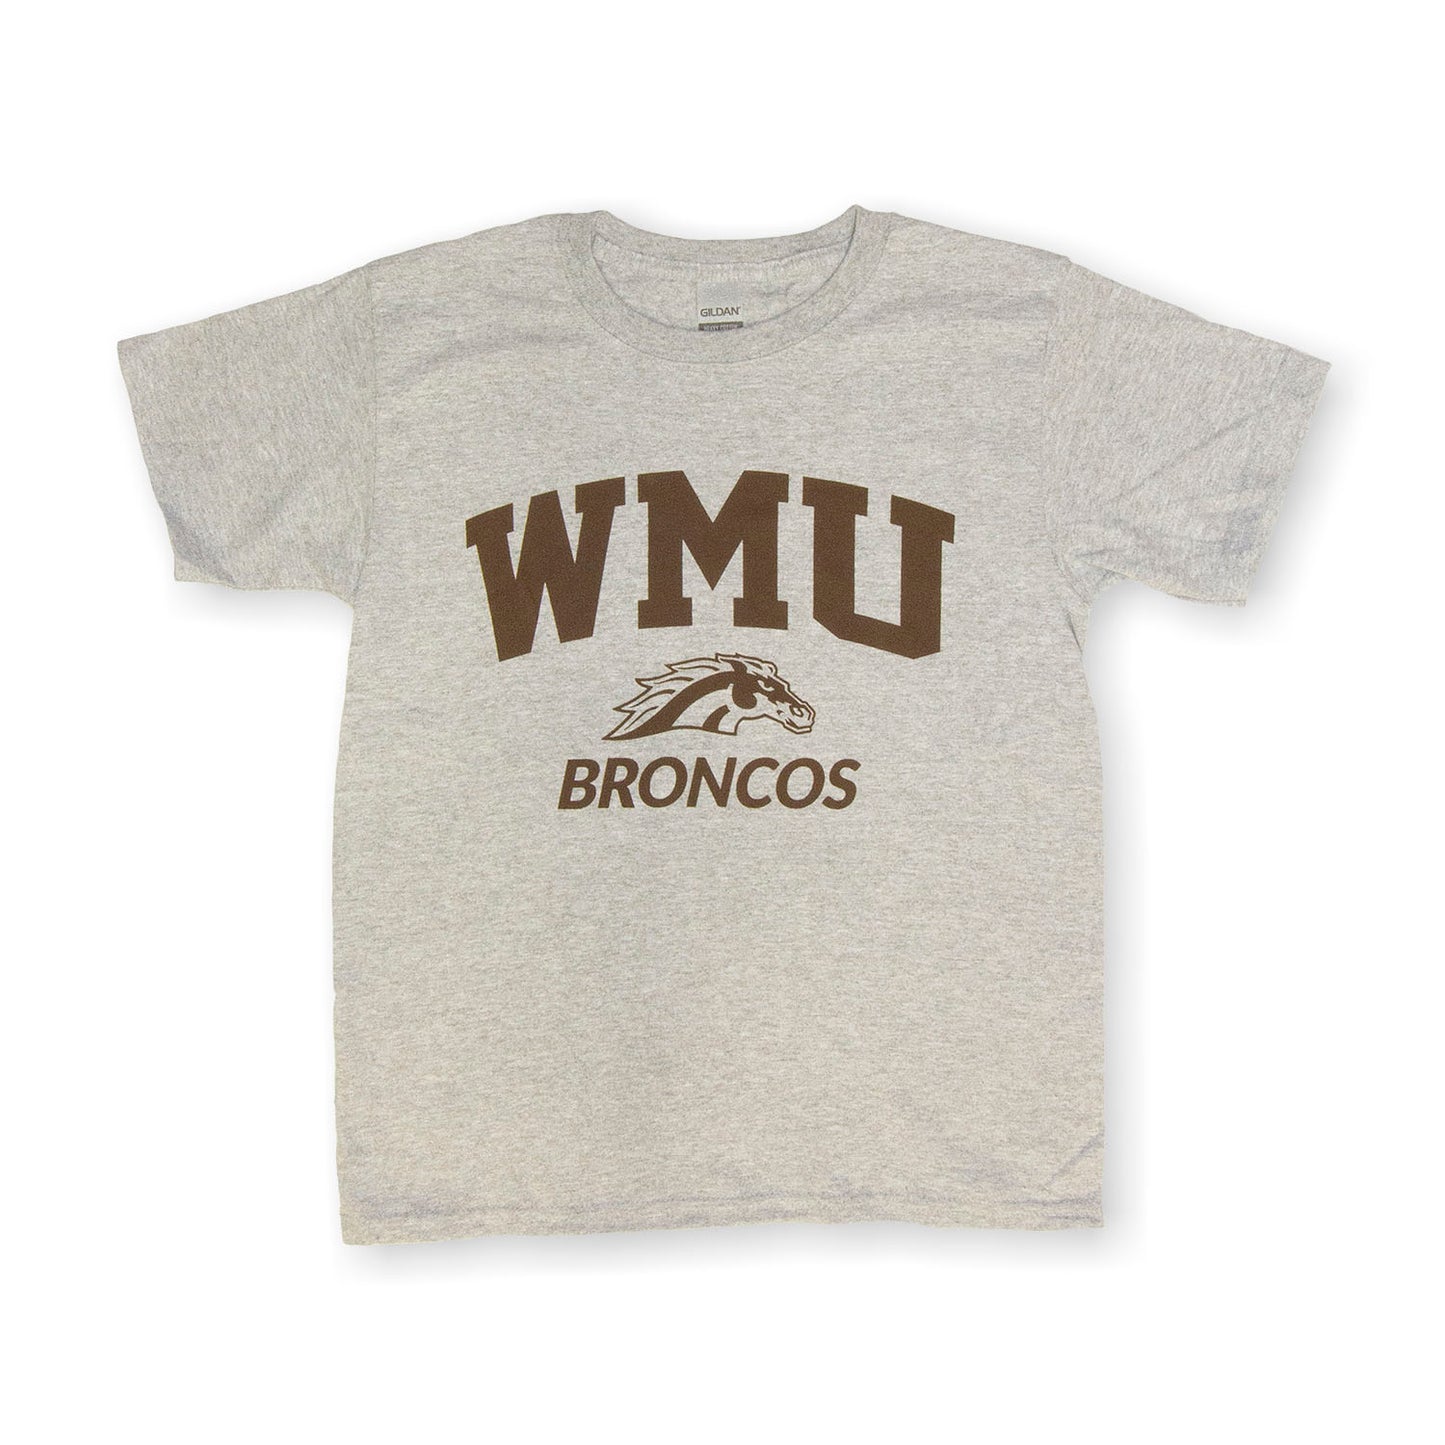 WMU Broncos Youth Tee